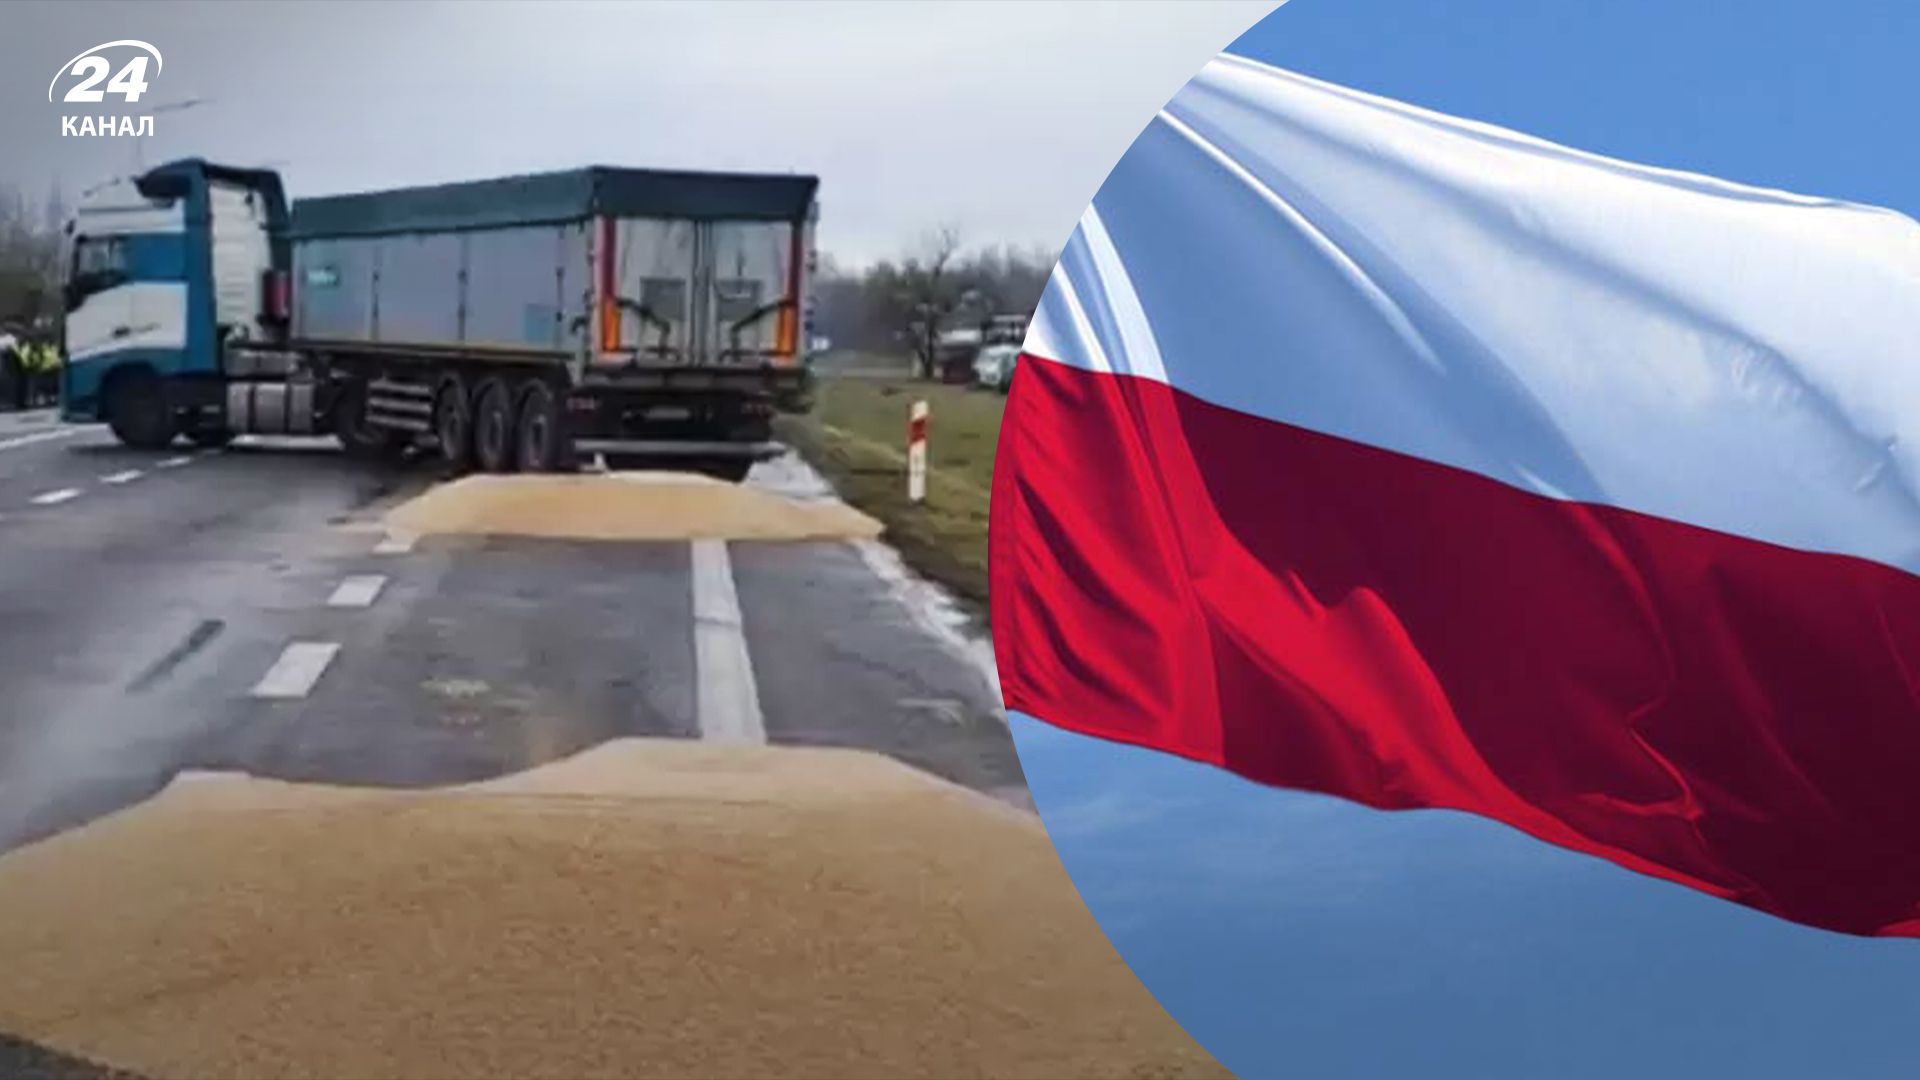 Головне про скандал із розсипаним зерном на польському кордоні 